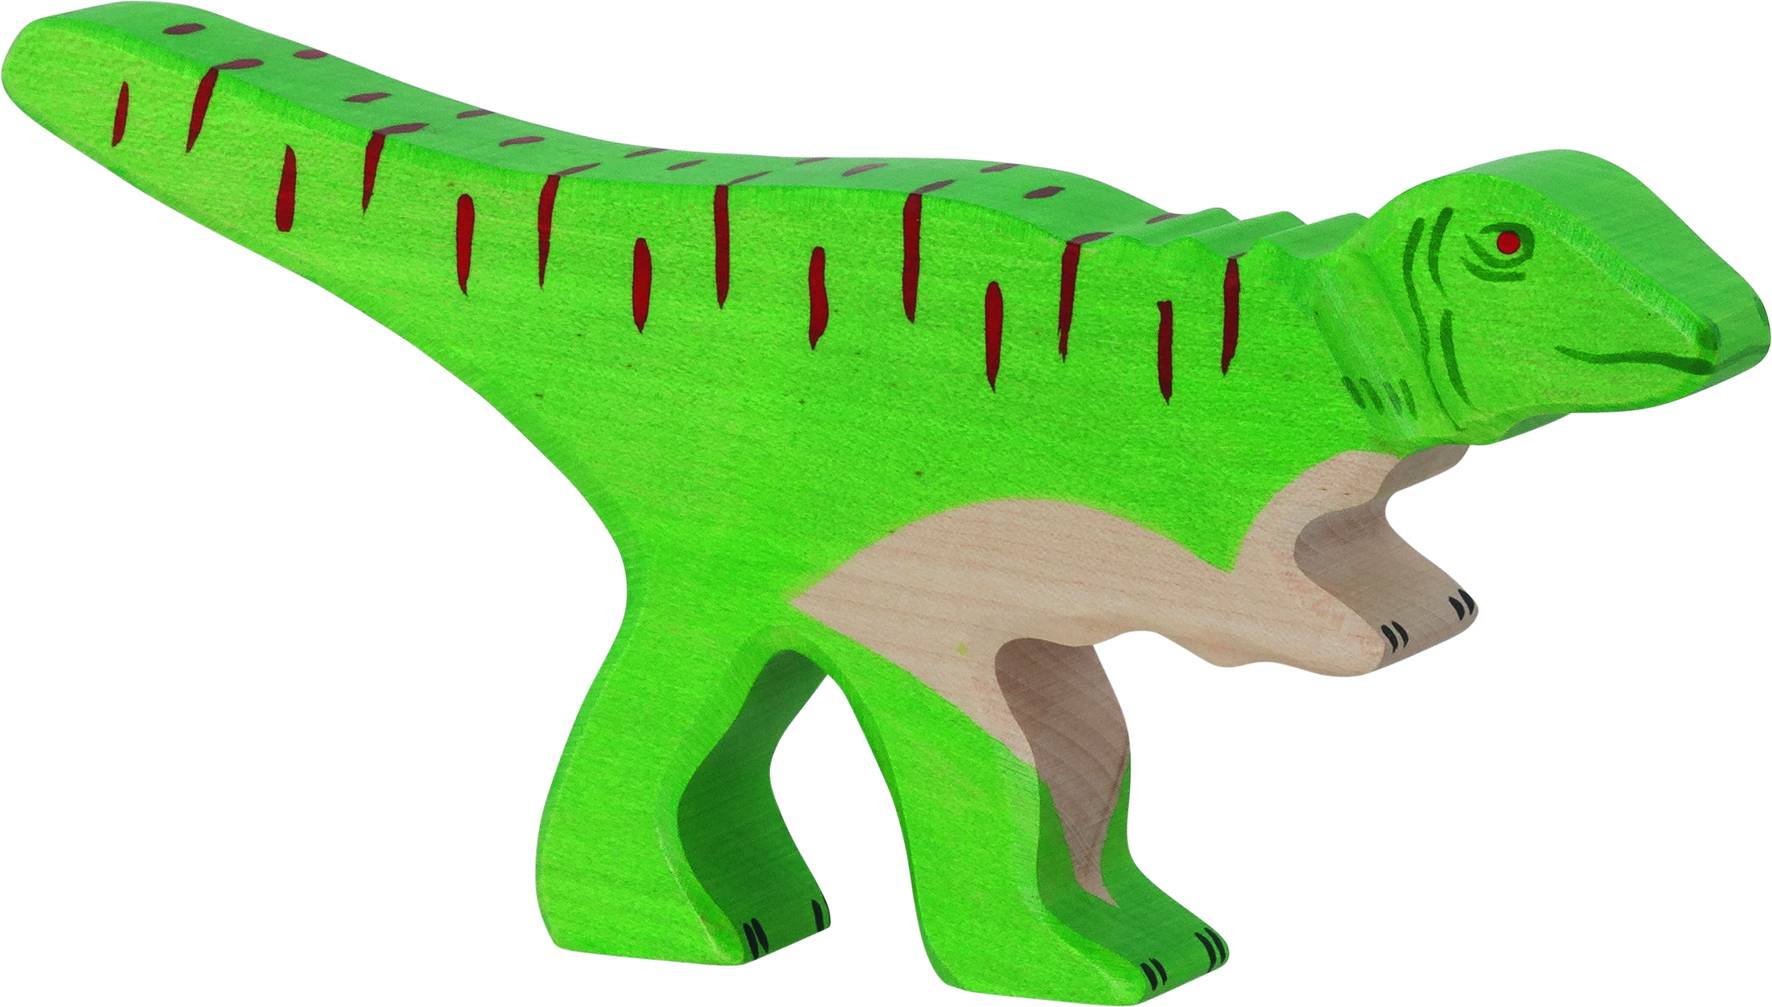 Holztiger Allosaurus